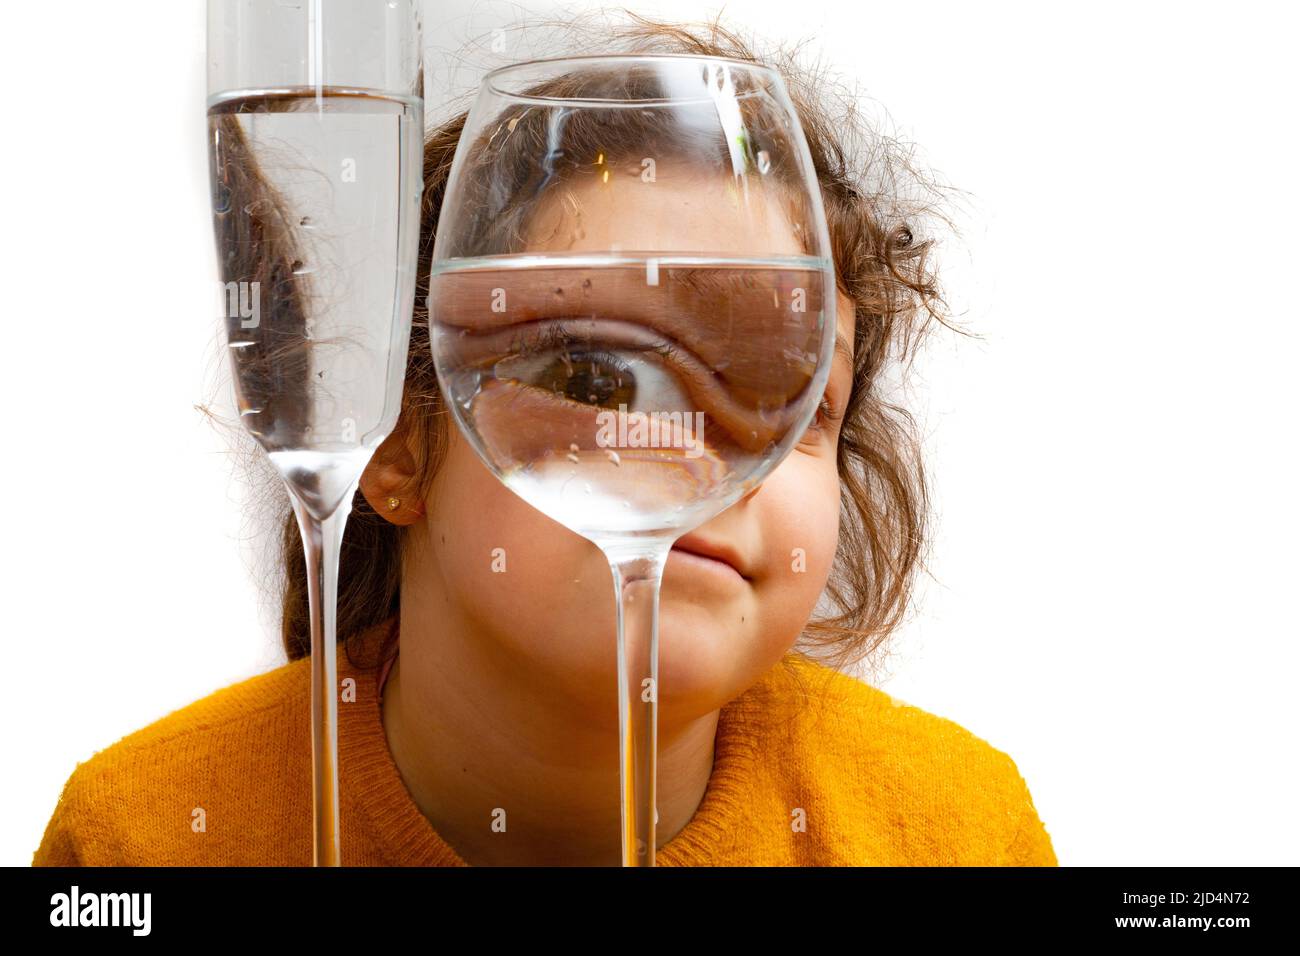 Retrato de niño de moda, el ojo mira a través del vaso de agua. Distorsión de objetos, concepto de ilusión óptica. Arte contemporáneo minimalista de alta calidad Foto de stock